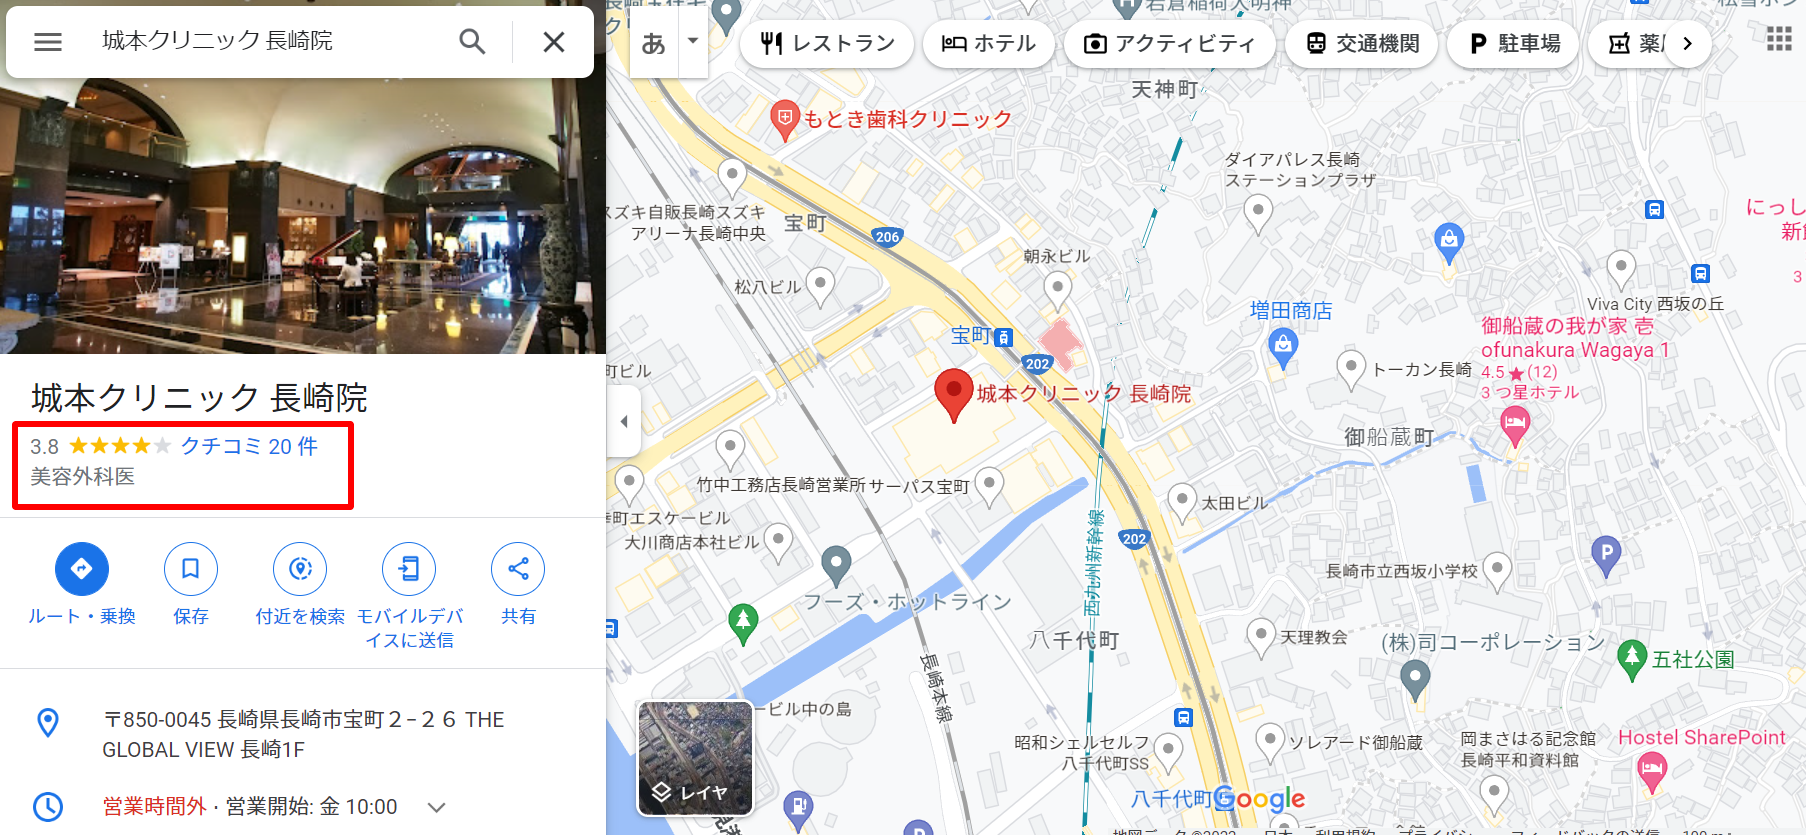 城本クリニック-長崎院-Google-マップ